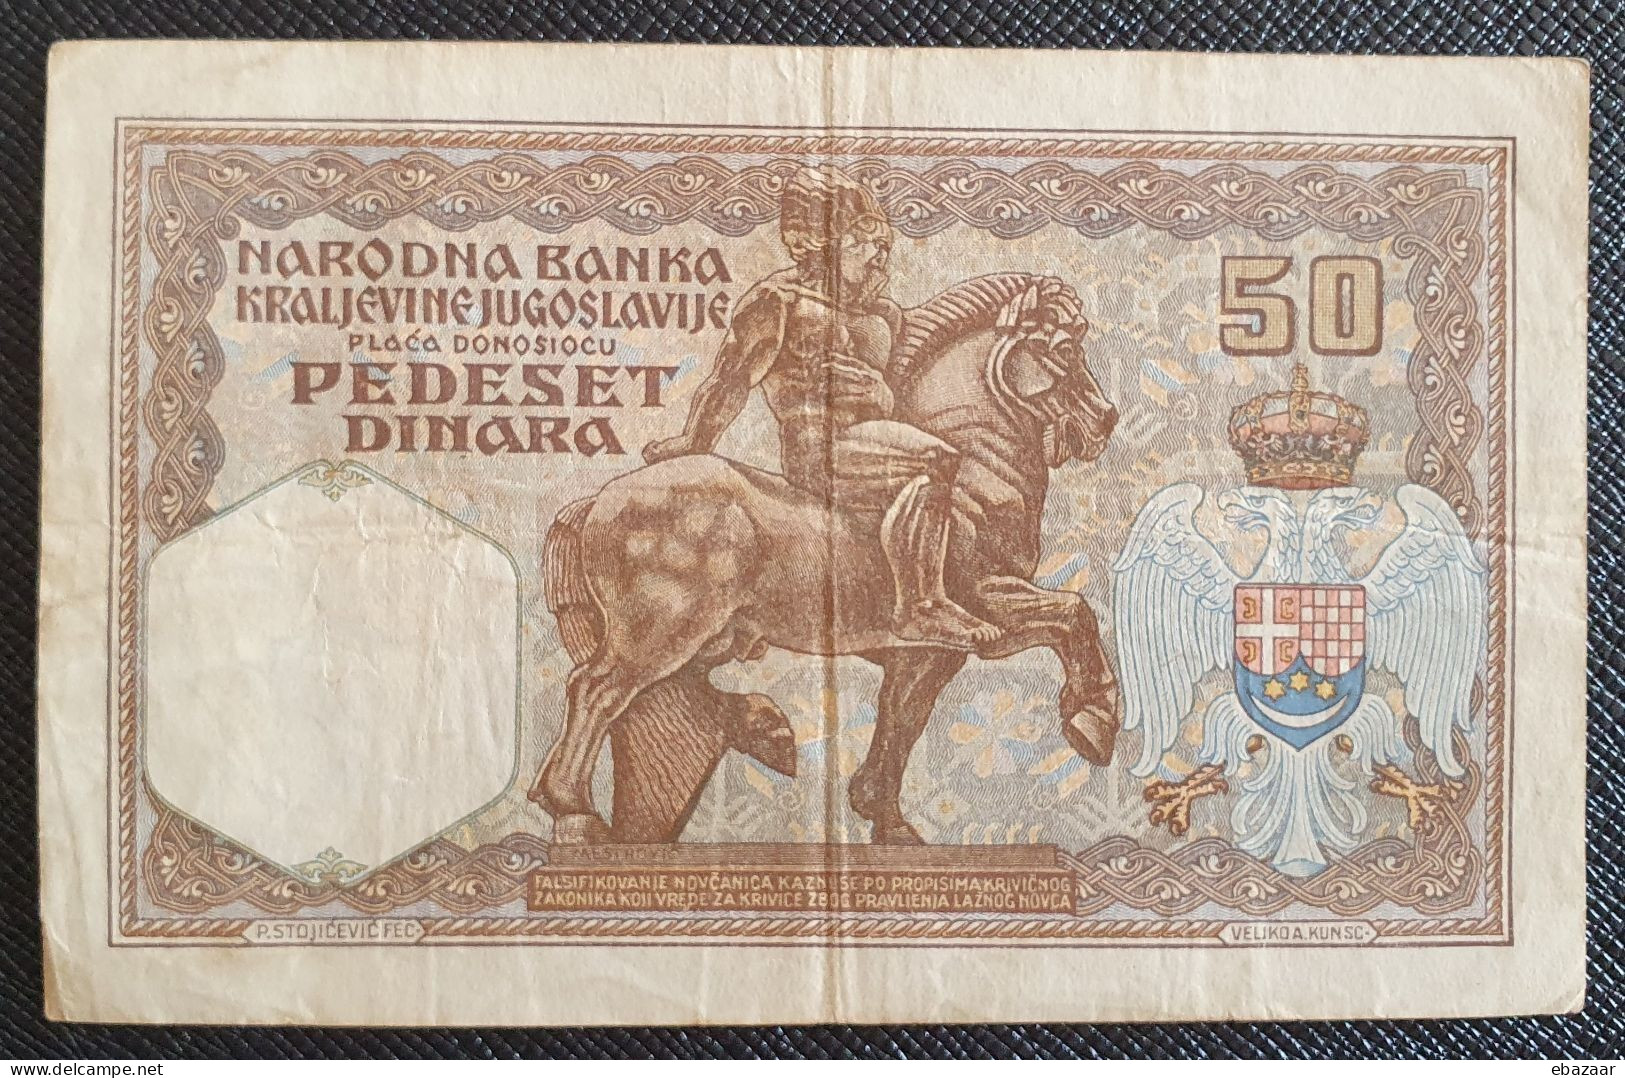 Yugoslavia 1931 (Narodna Banka Kraljevine Jugoslavije) 50 Dinara Banknote P-28 Circulated + FREE GIFT - Jugoslawien